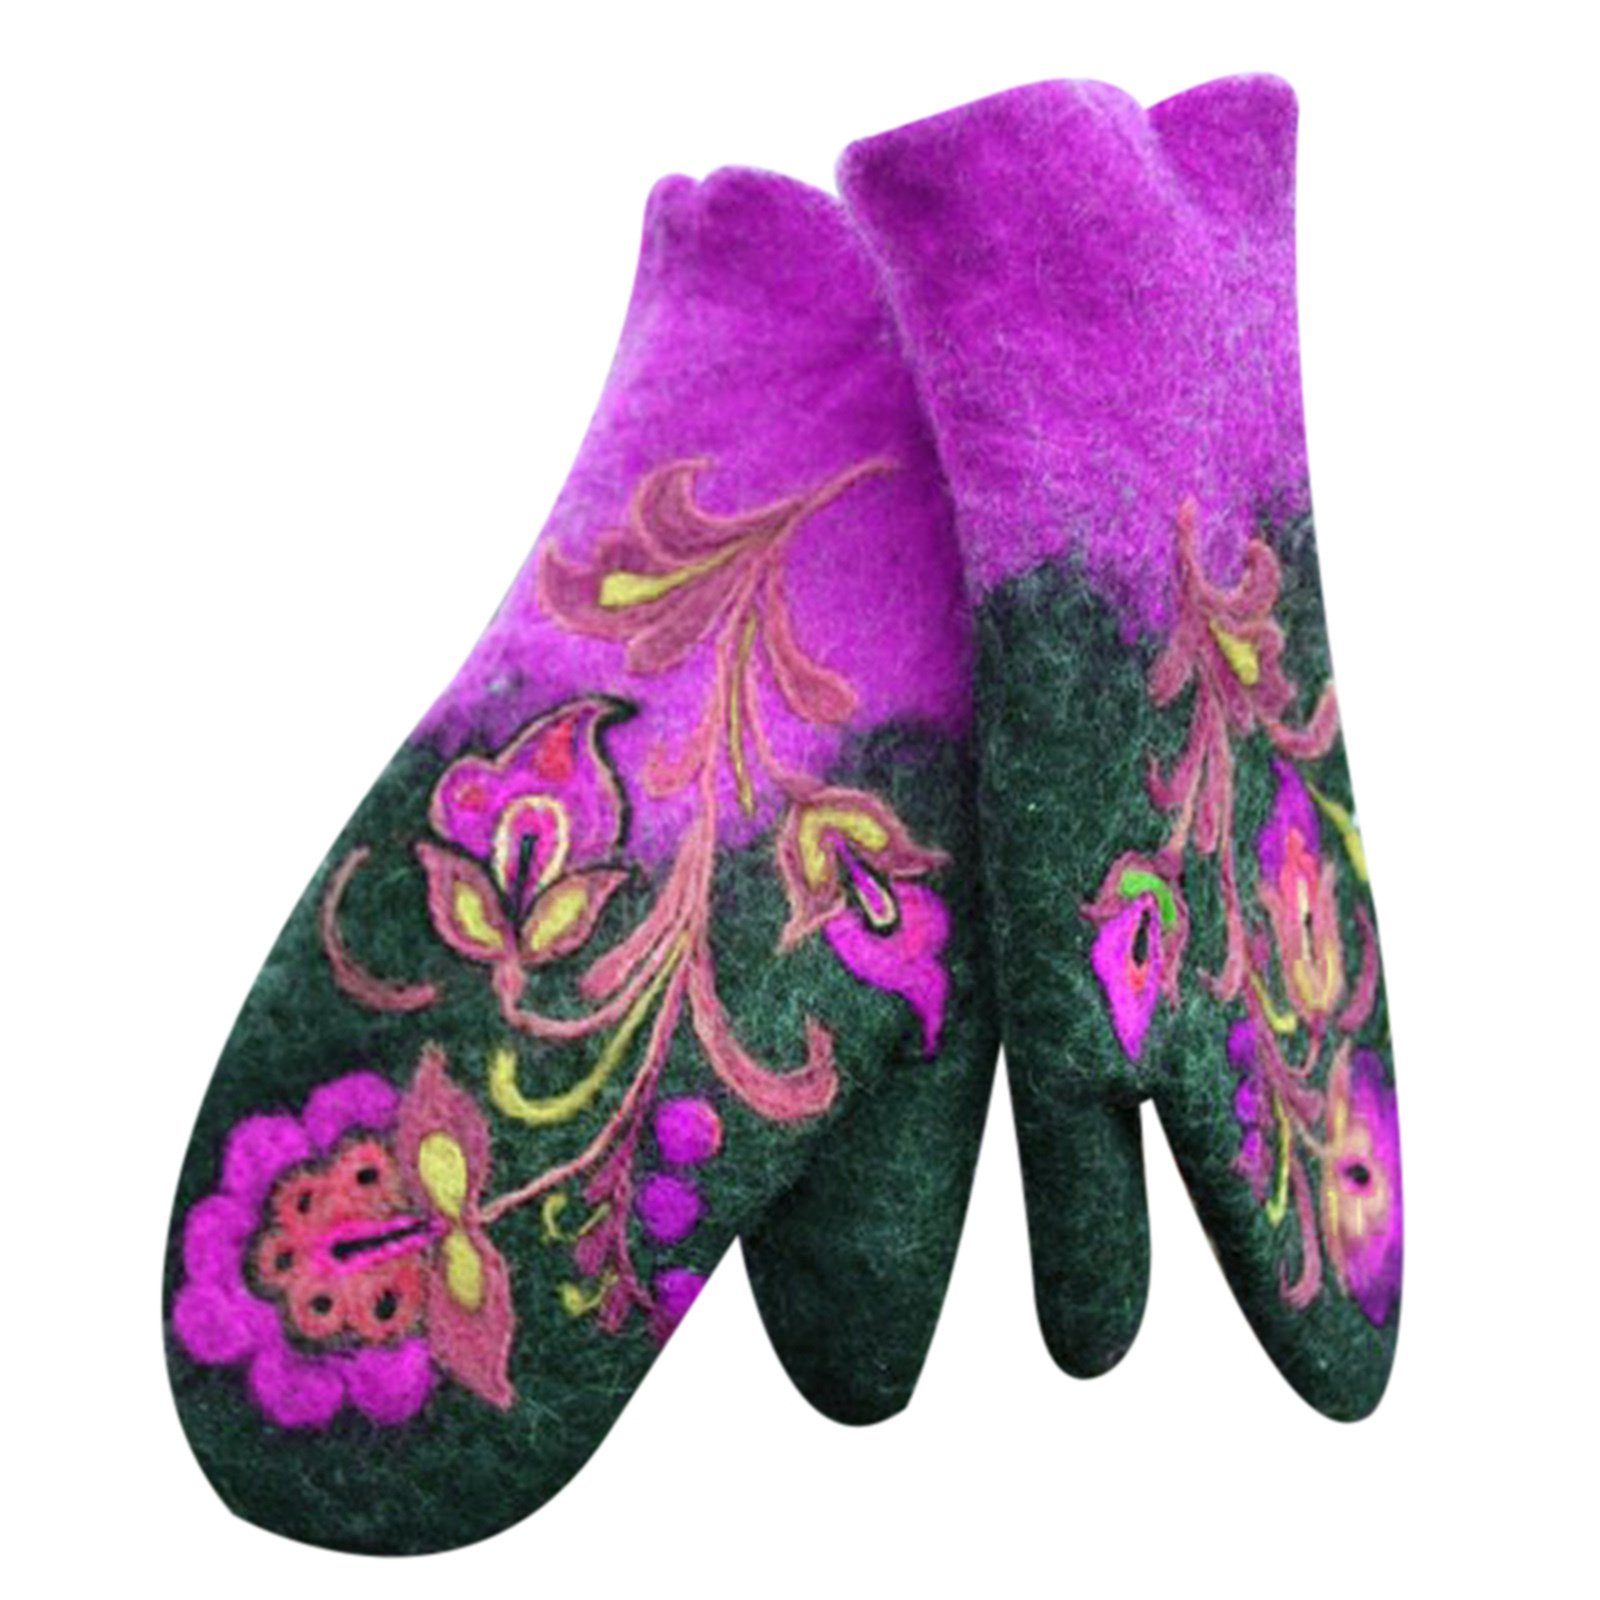 Blusmart Fleecehandschuhe Weihnachtsgeschenk Damen Winterhandschuhe Damenmode Handschuhe Fleecehandschuhe lila